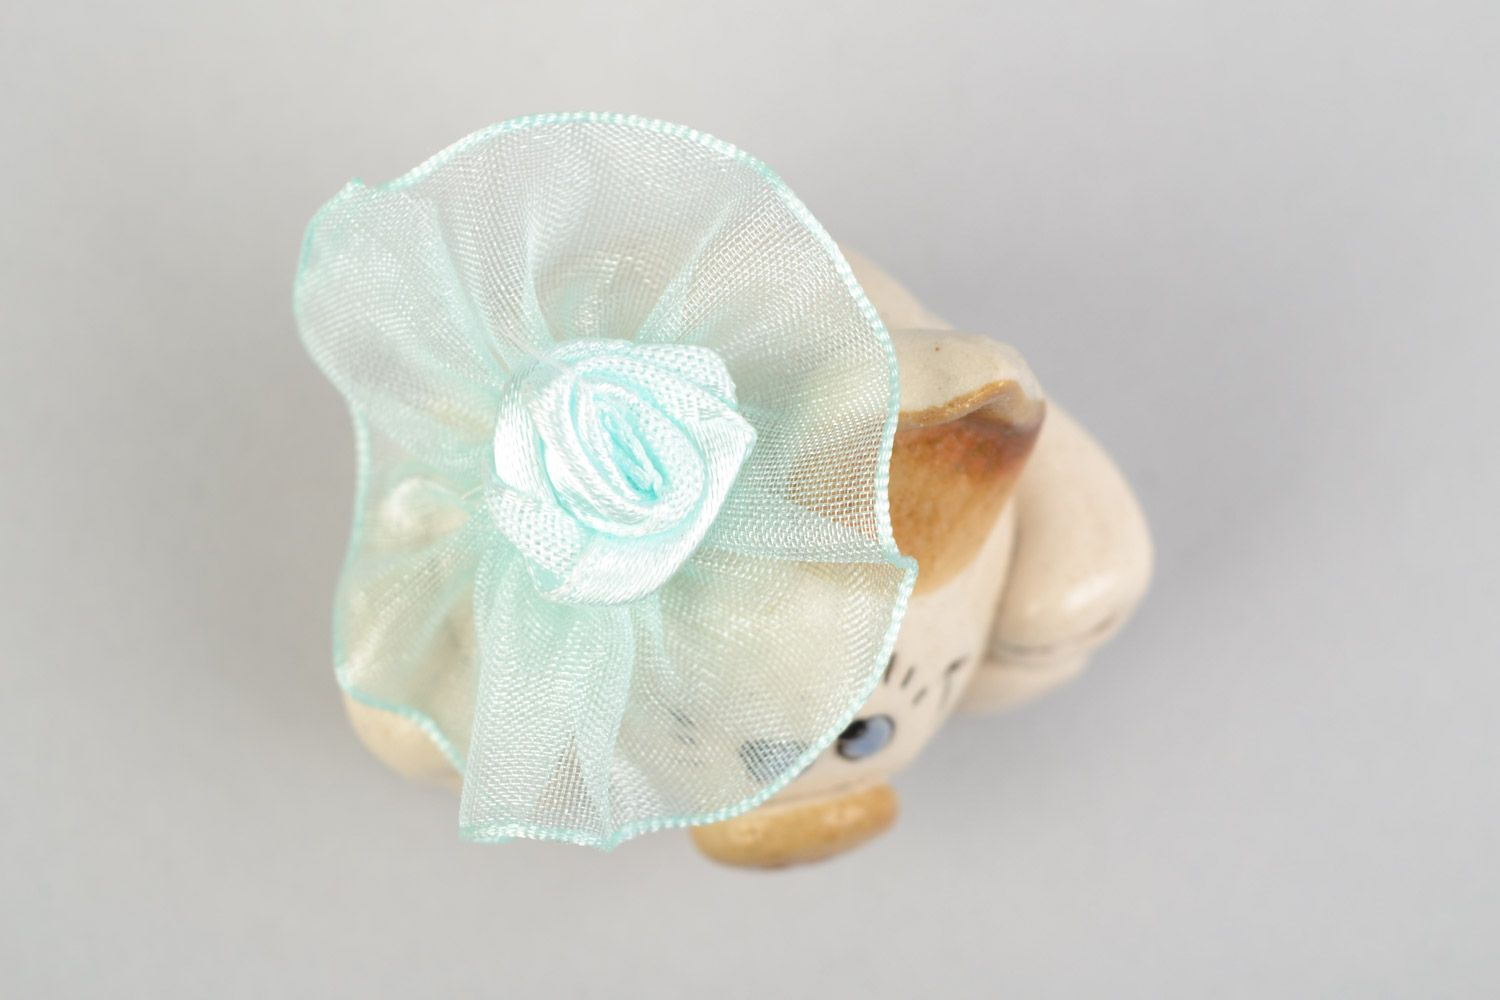 Авторская расписанная глазурью глиняная фигурка свинки с цветком ручной работы фото 4